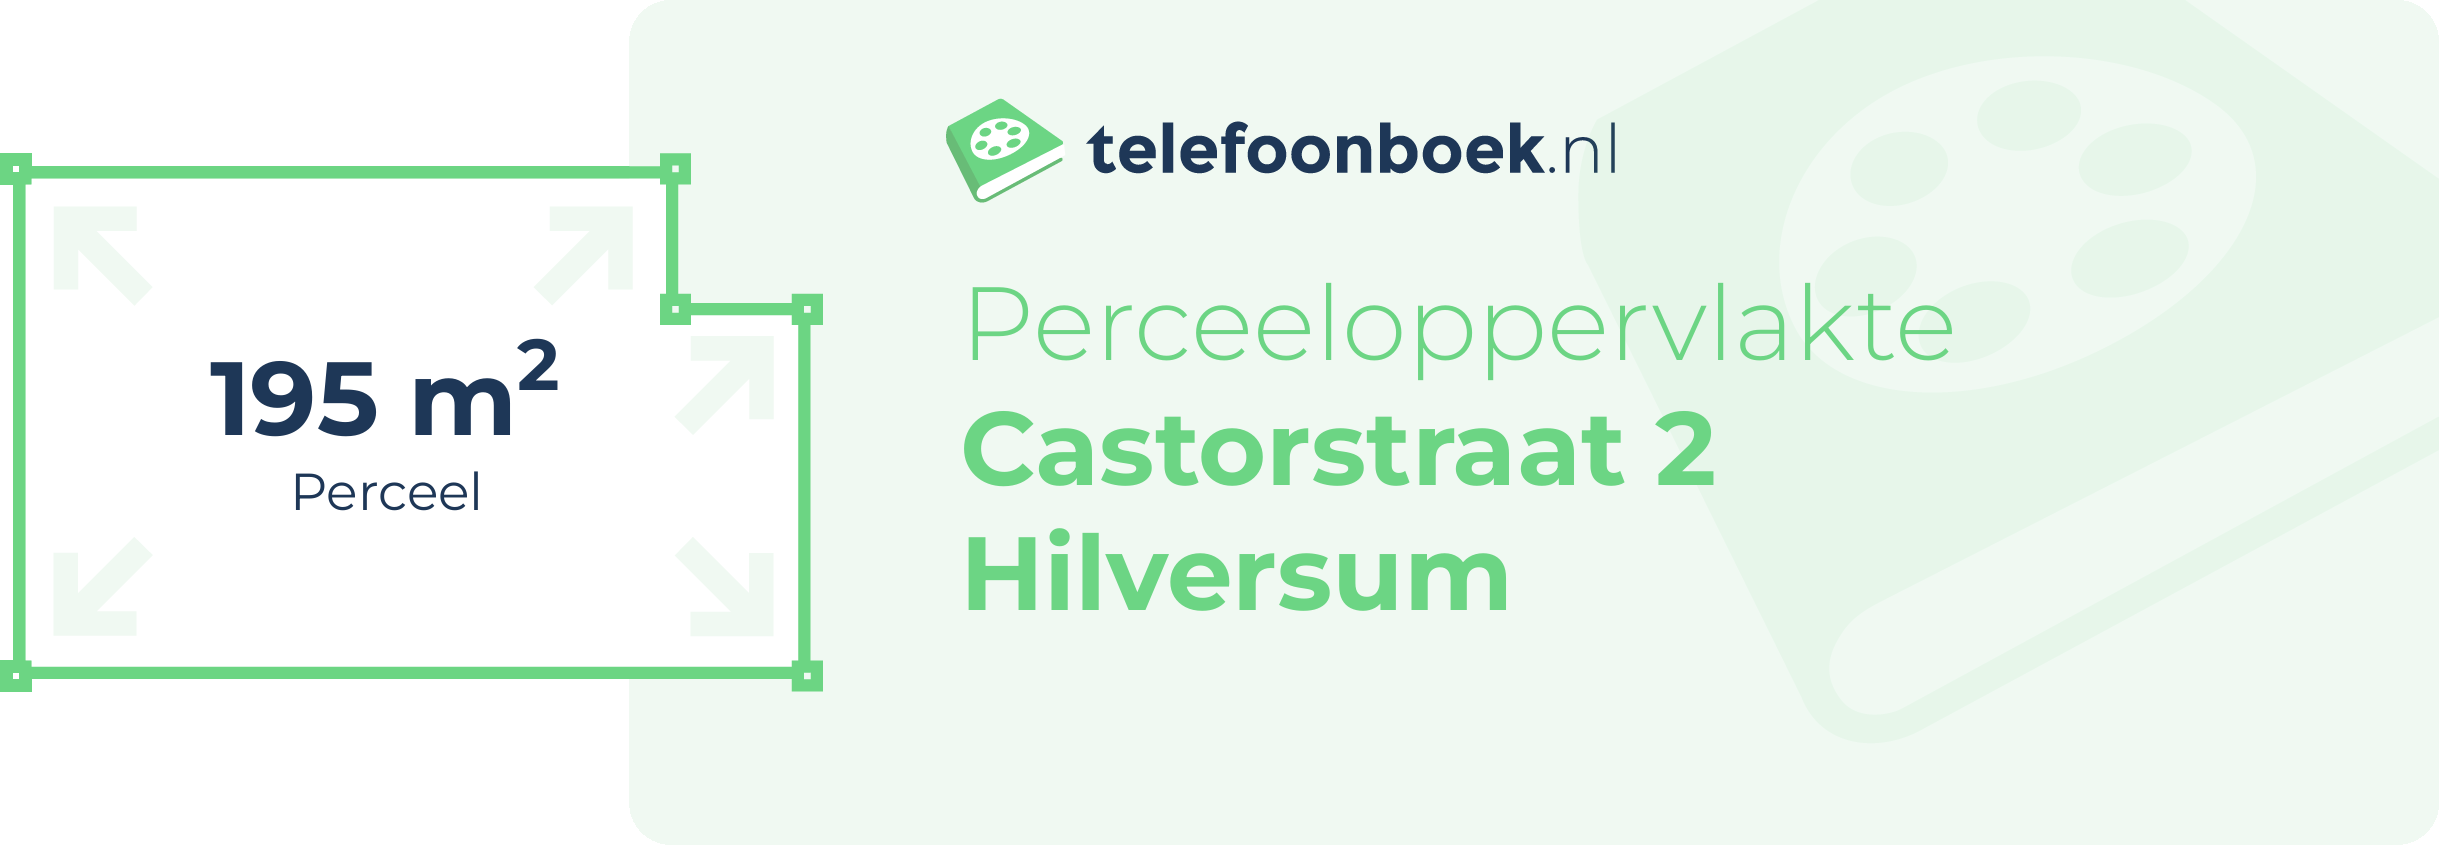 Perceeloppervlakte Castorstraat 2 Hilversum